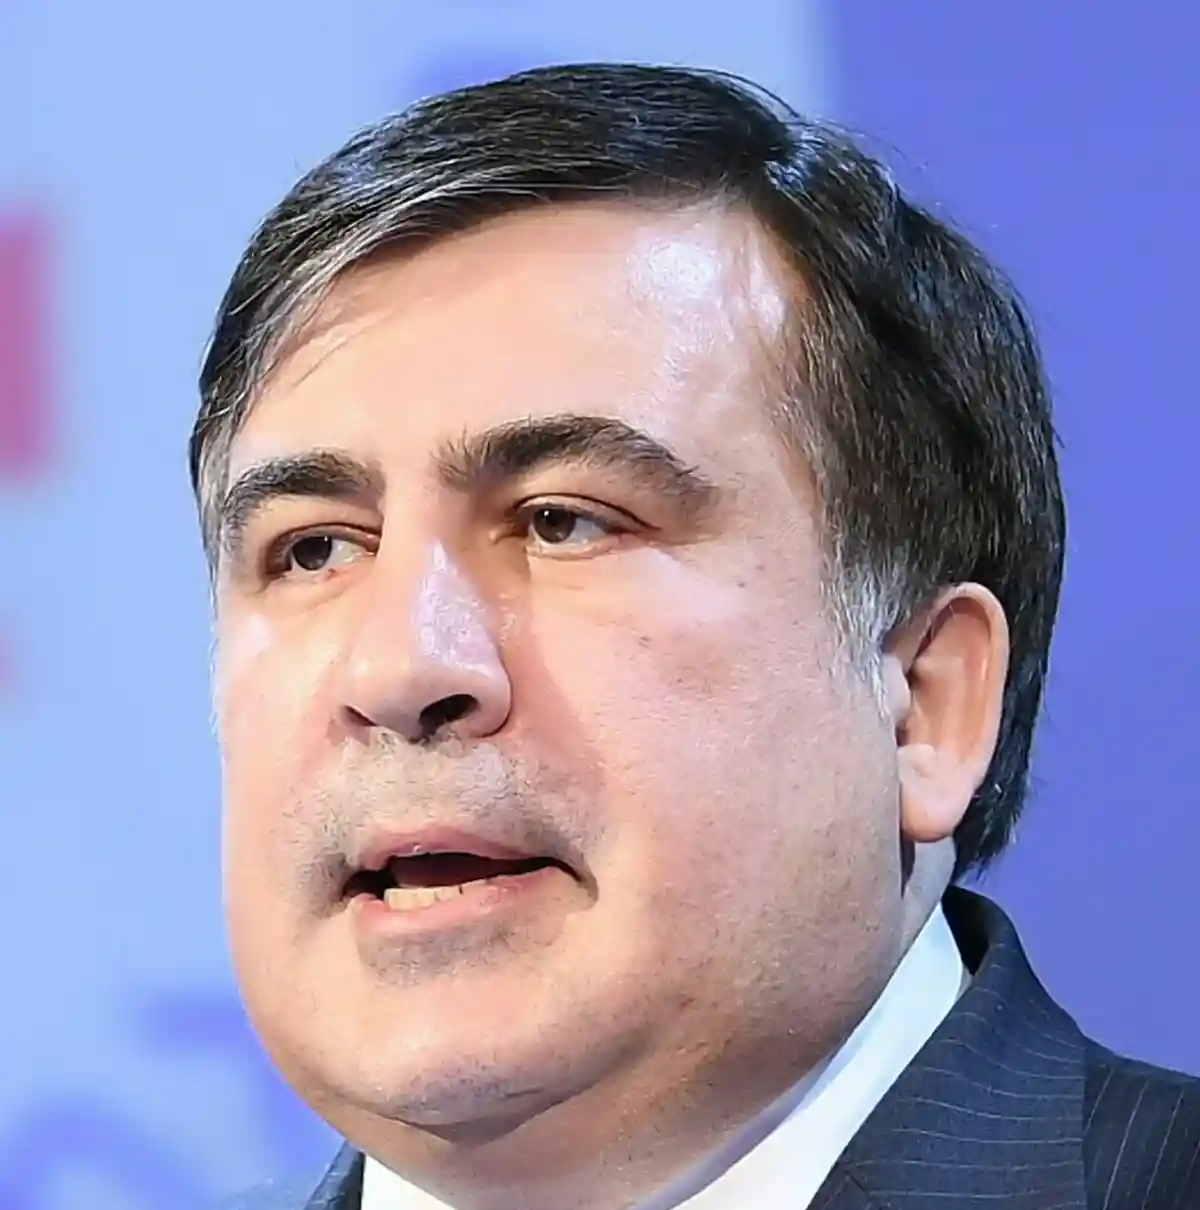 Михаил Саакашвили. Фото: European People/Wikimedia.org